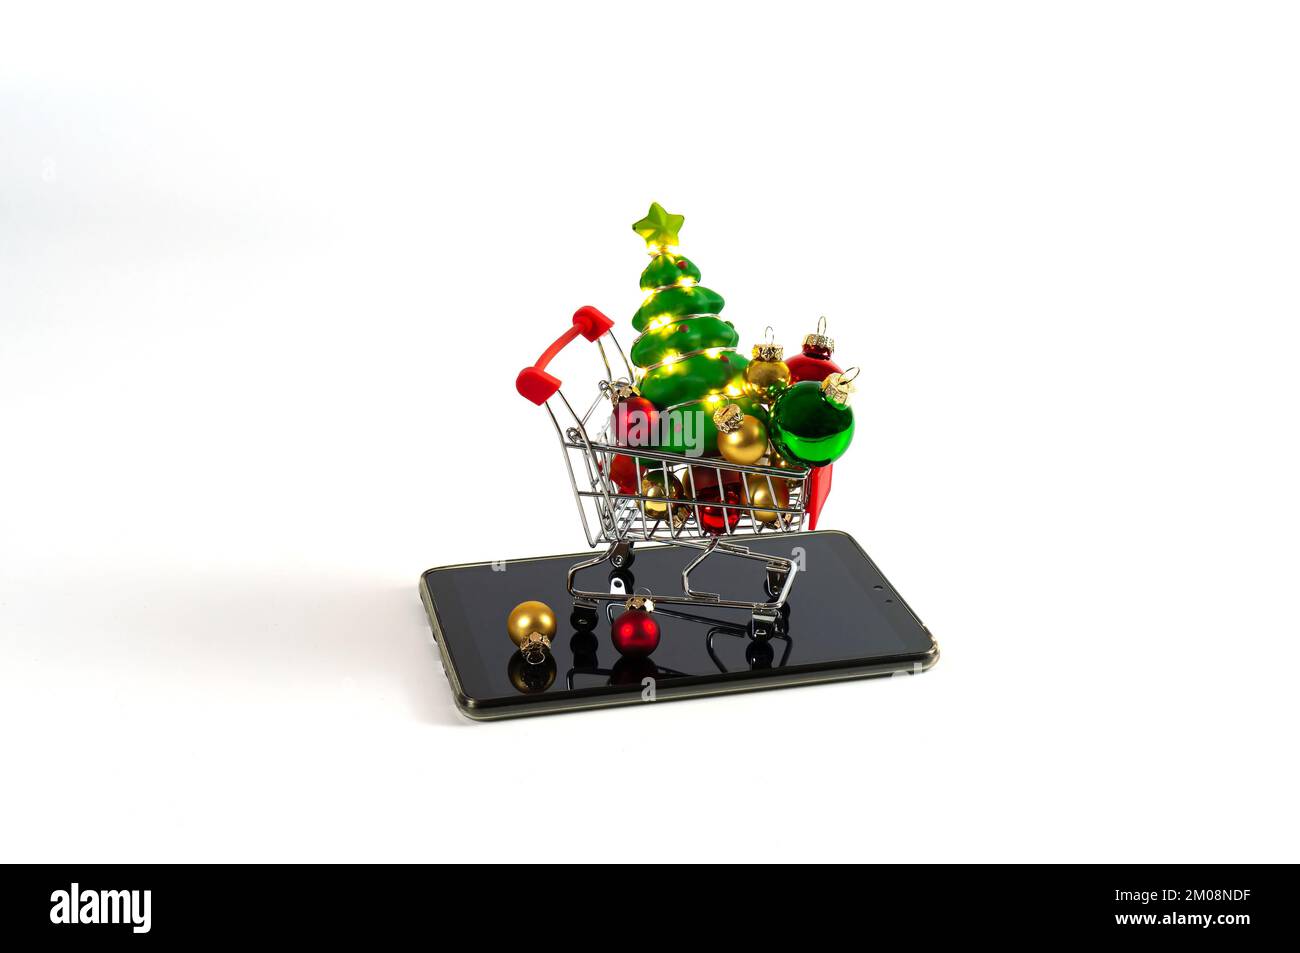 Einkaufswagen mit weihnachtsbällen und Baum mit Girlanden auf dem Tablet. Einfacher Hintergrund. Stockfoto